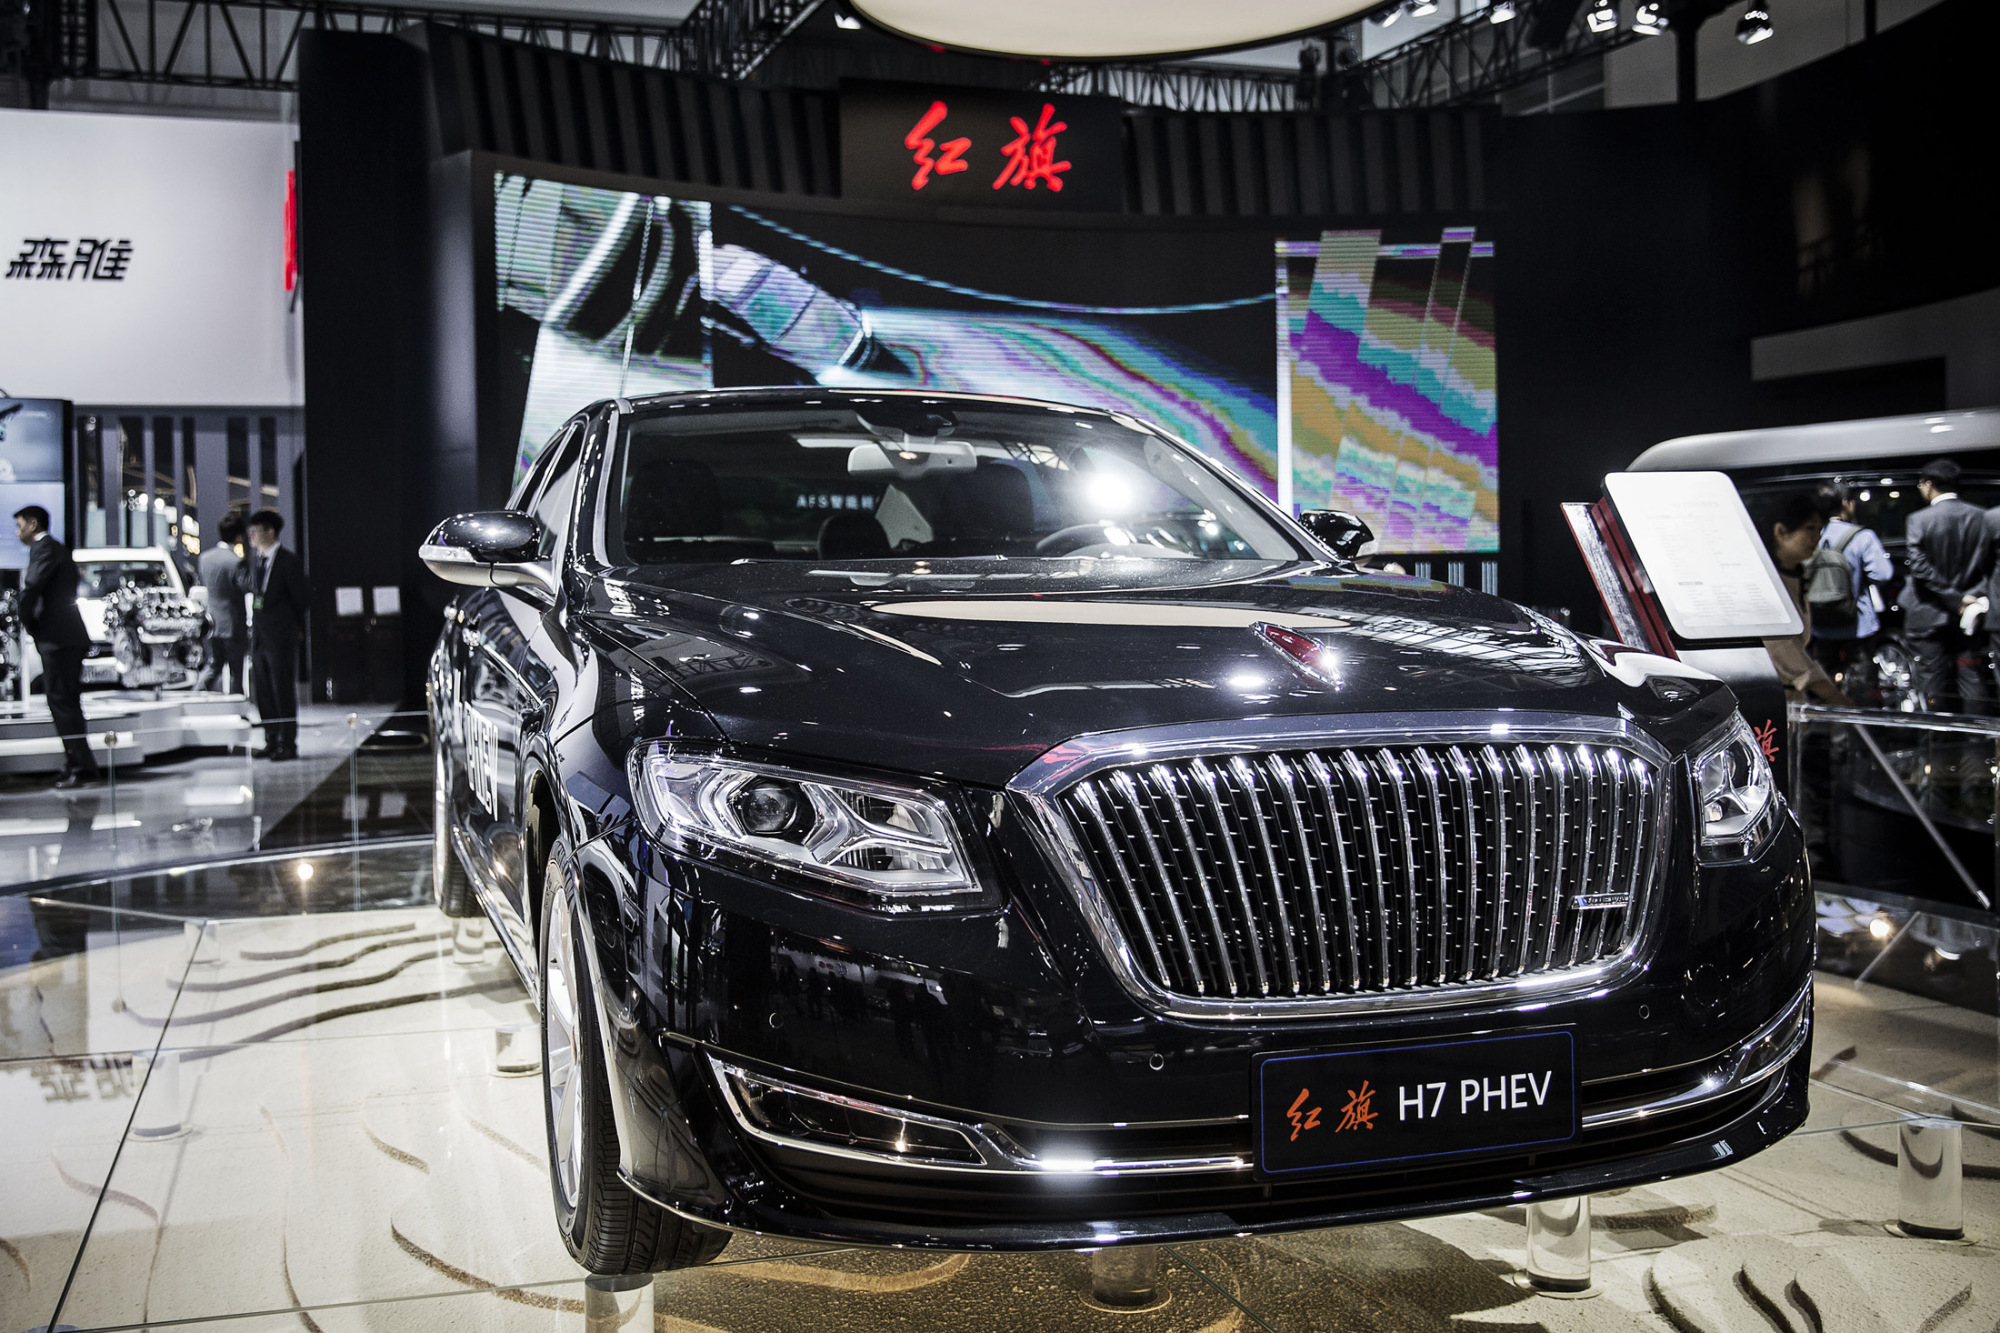 
2 năm trước, nhãn hiệu nhà nước FAW đã từng gây choáng khi bán một chiếc xe limousine tự sản xuất với giá lên đến 5 triệu Nhân dân tệ, tương đương 803.300 USD. Năm nay, FAW muốn tỏa sáng tại triển lãm Bắc Kinh bằng mẫu xe H7 PHEV của nhãn hiệu con Hồng Kỳ.
